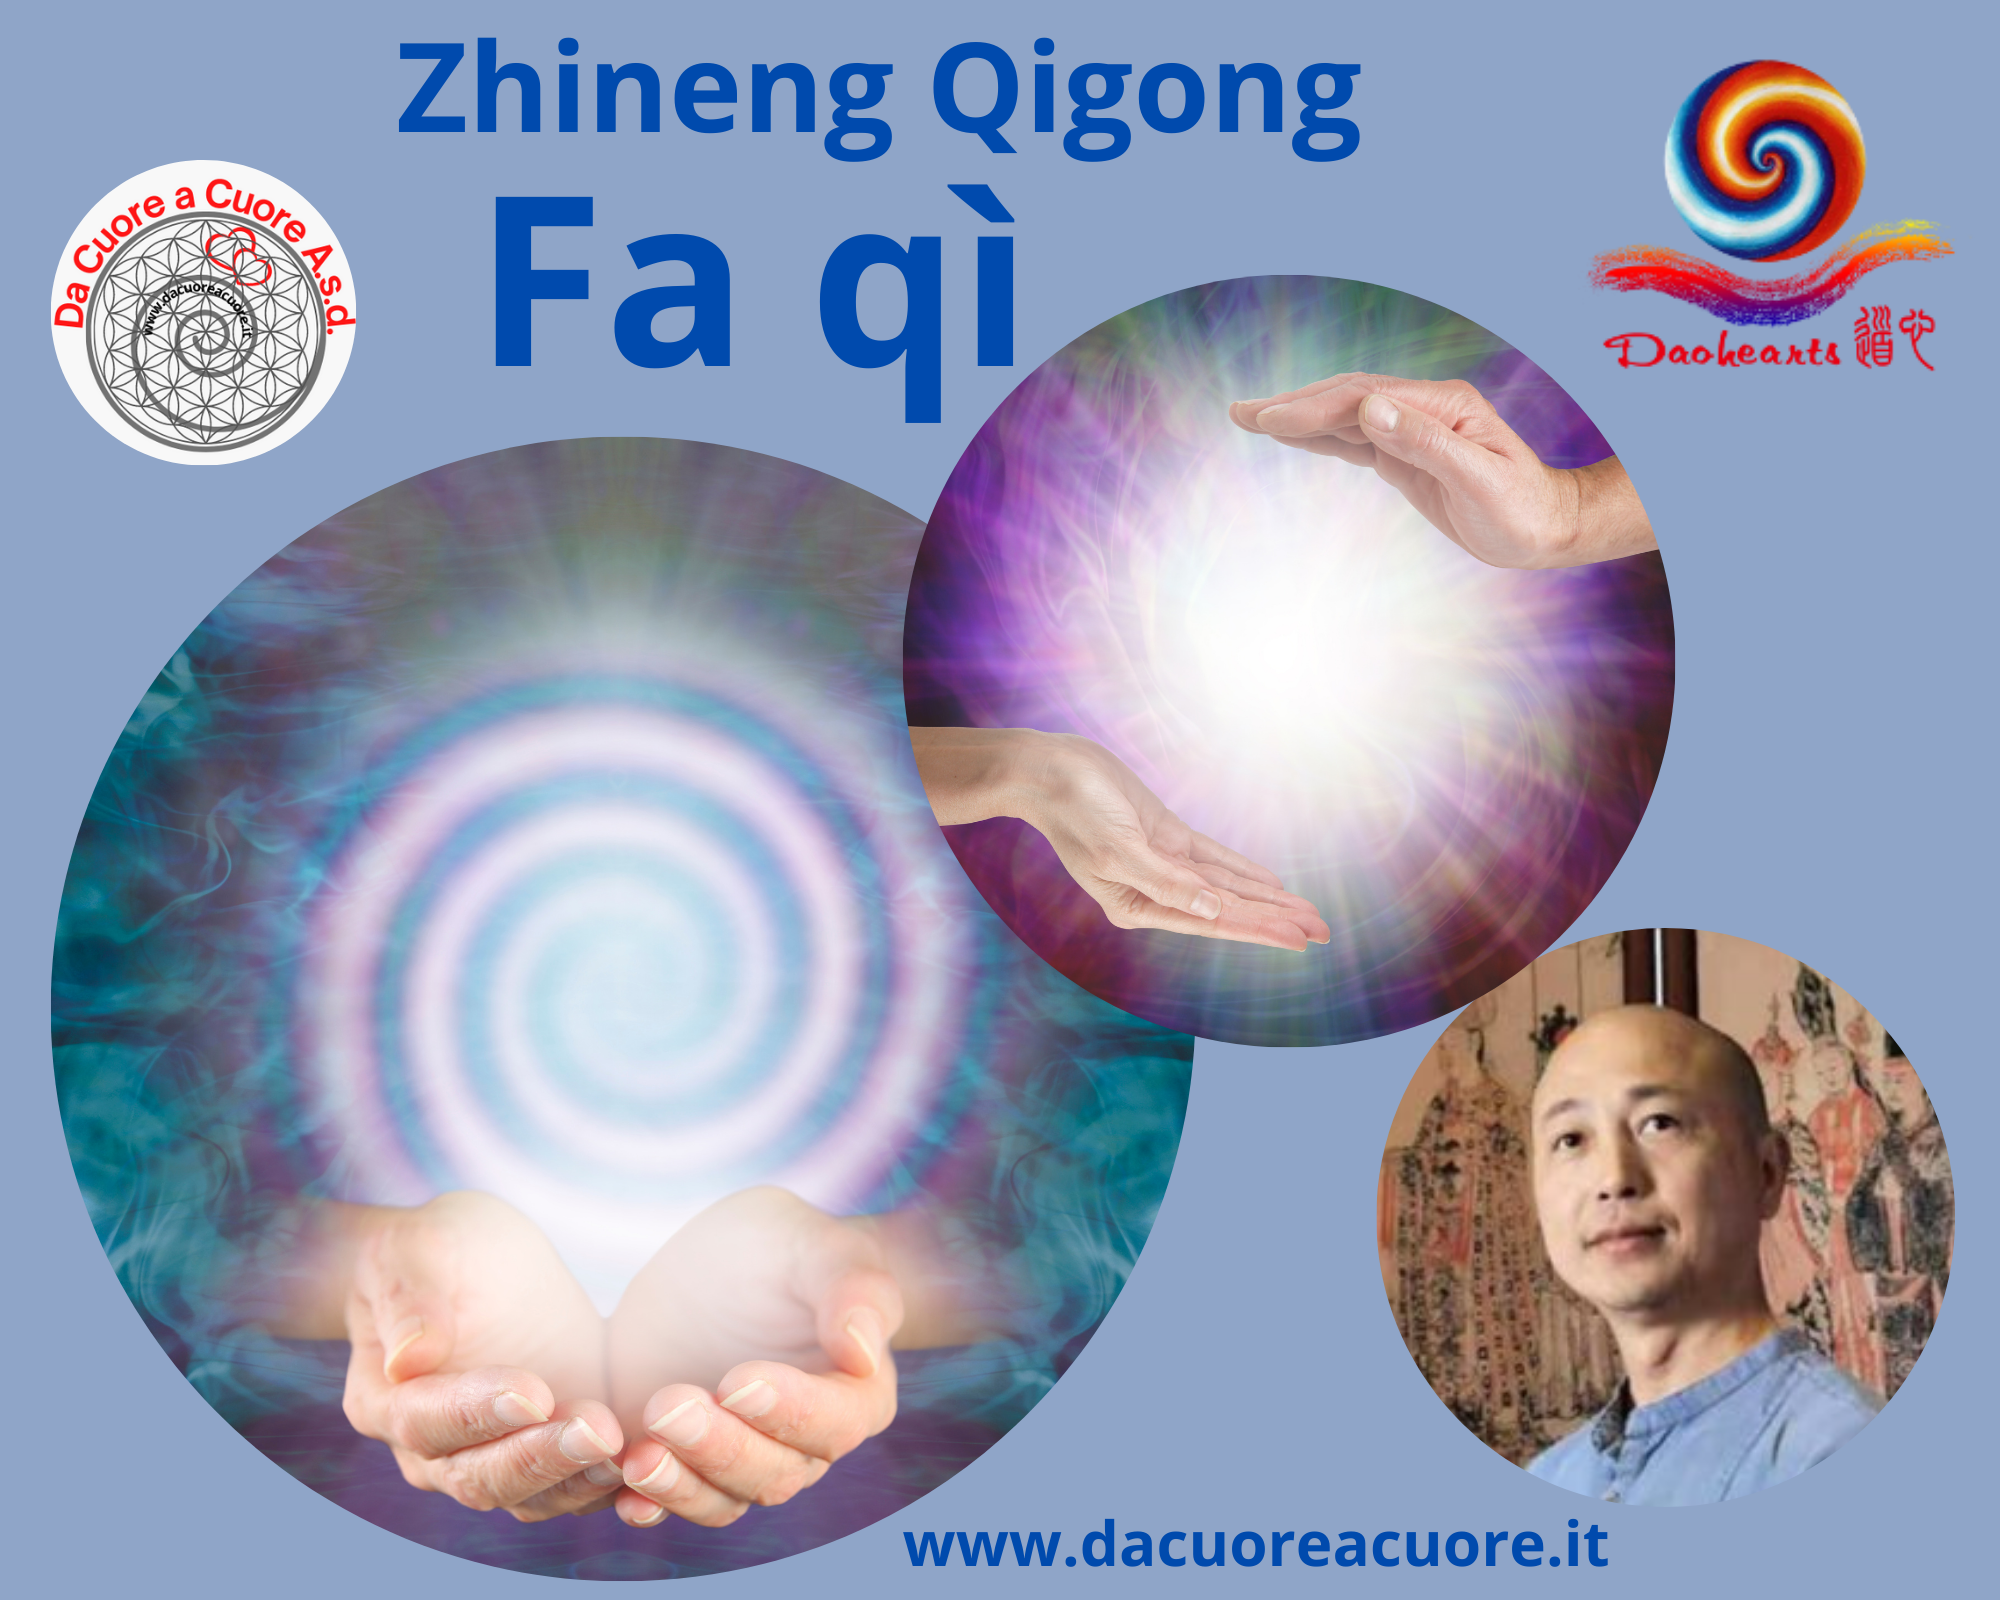 Seminario Zhineng Qigong “Fa Qì” con Master Tao Qingyu